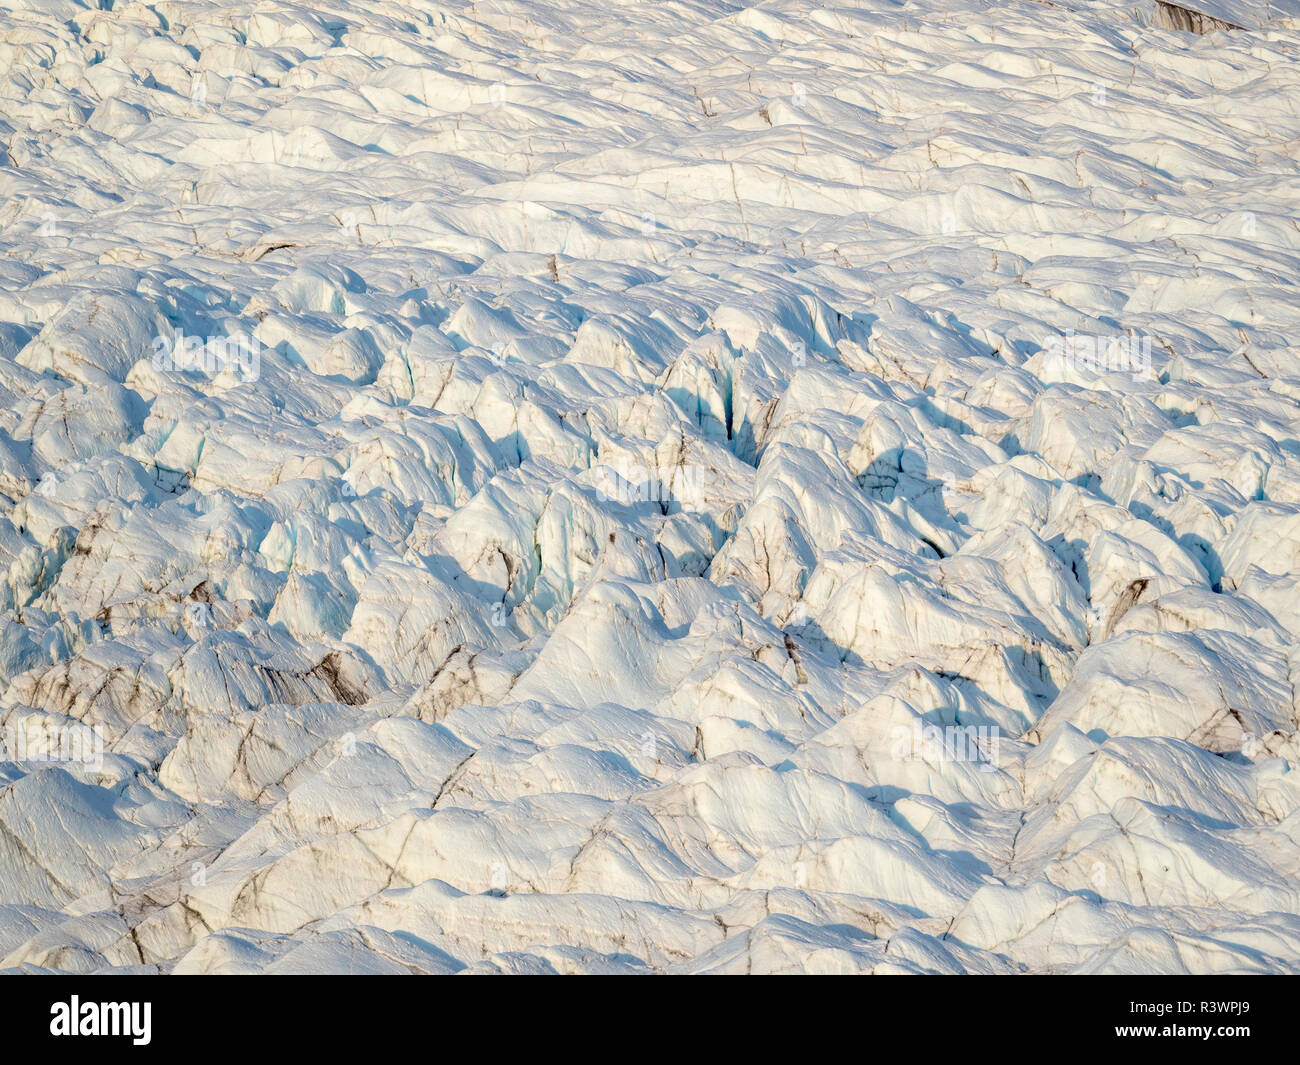 Le Russell Glacier. Paysage près de l'inlandsis du Groenland près de Kangerlussuaq, Groenland, Danemark Banque D'Images